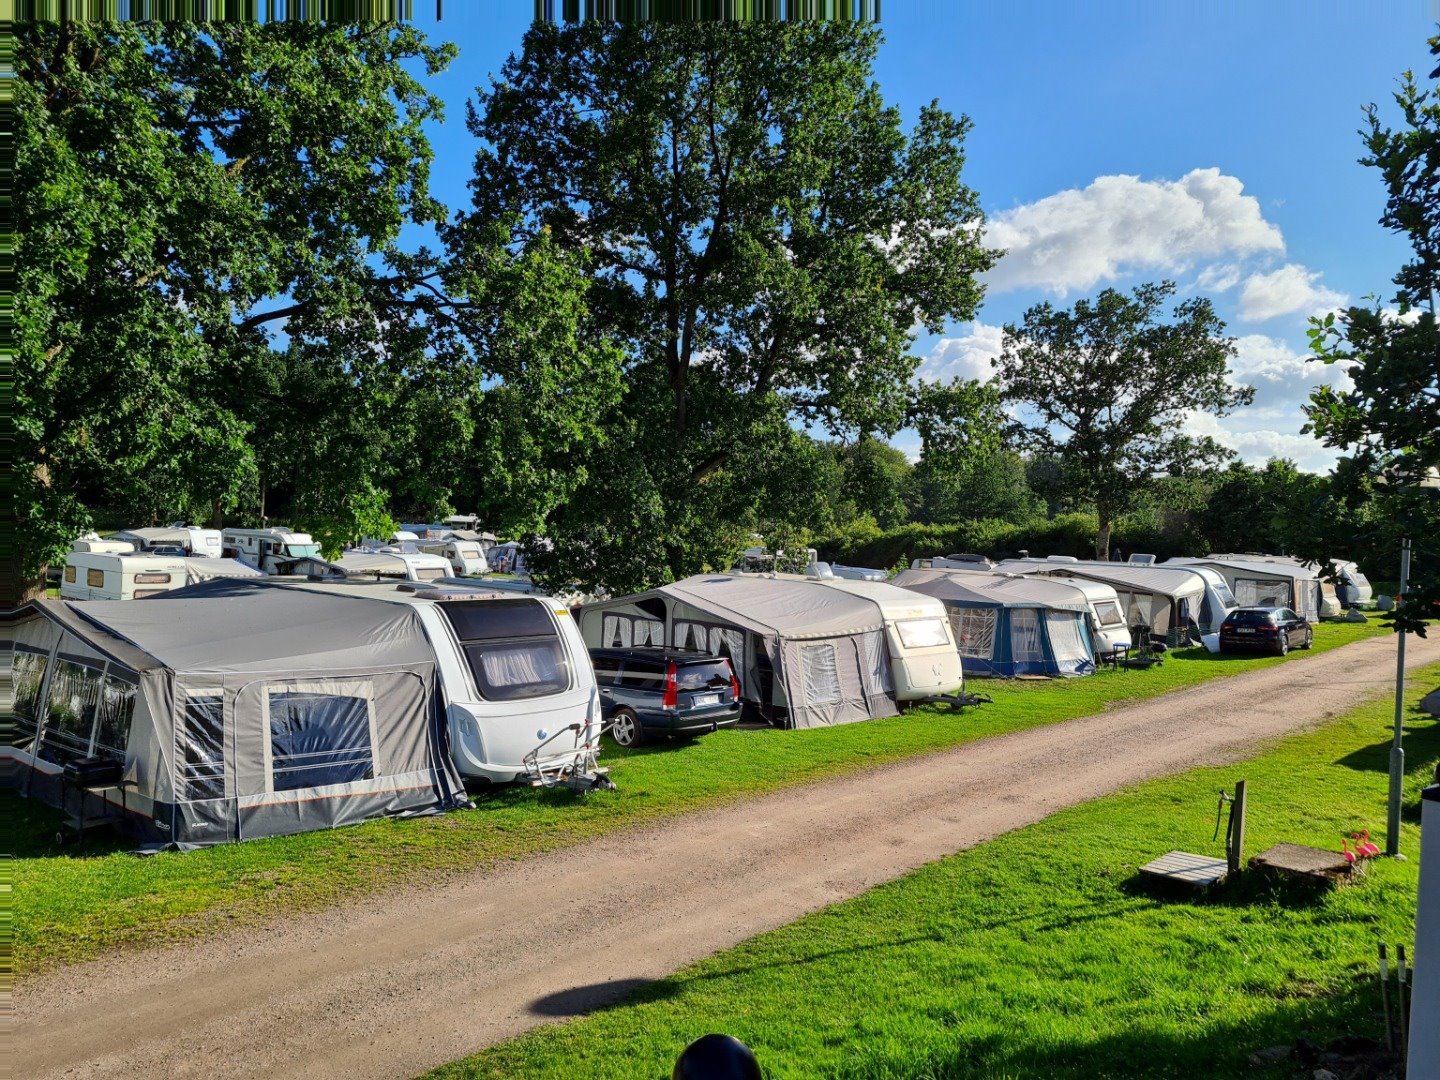 Strom auf dem Campingplatz - Campen mit Spass